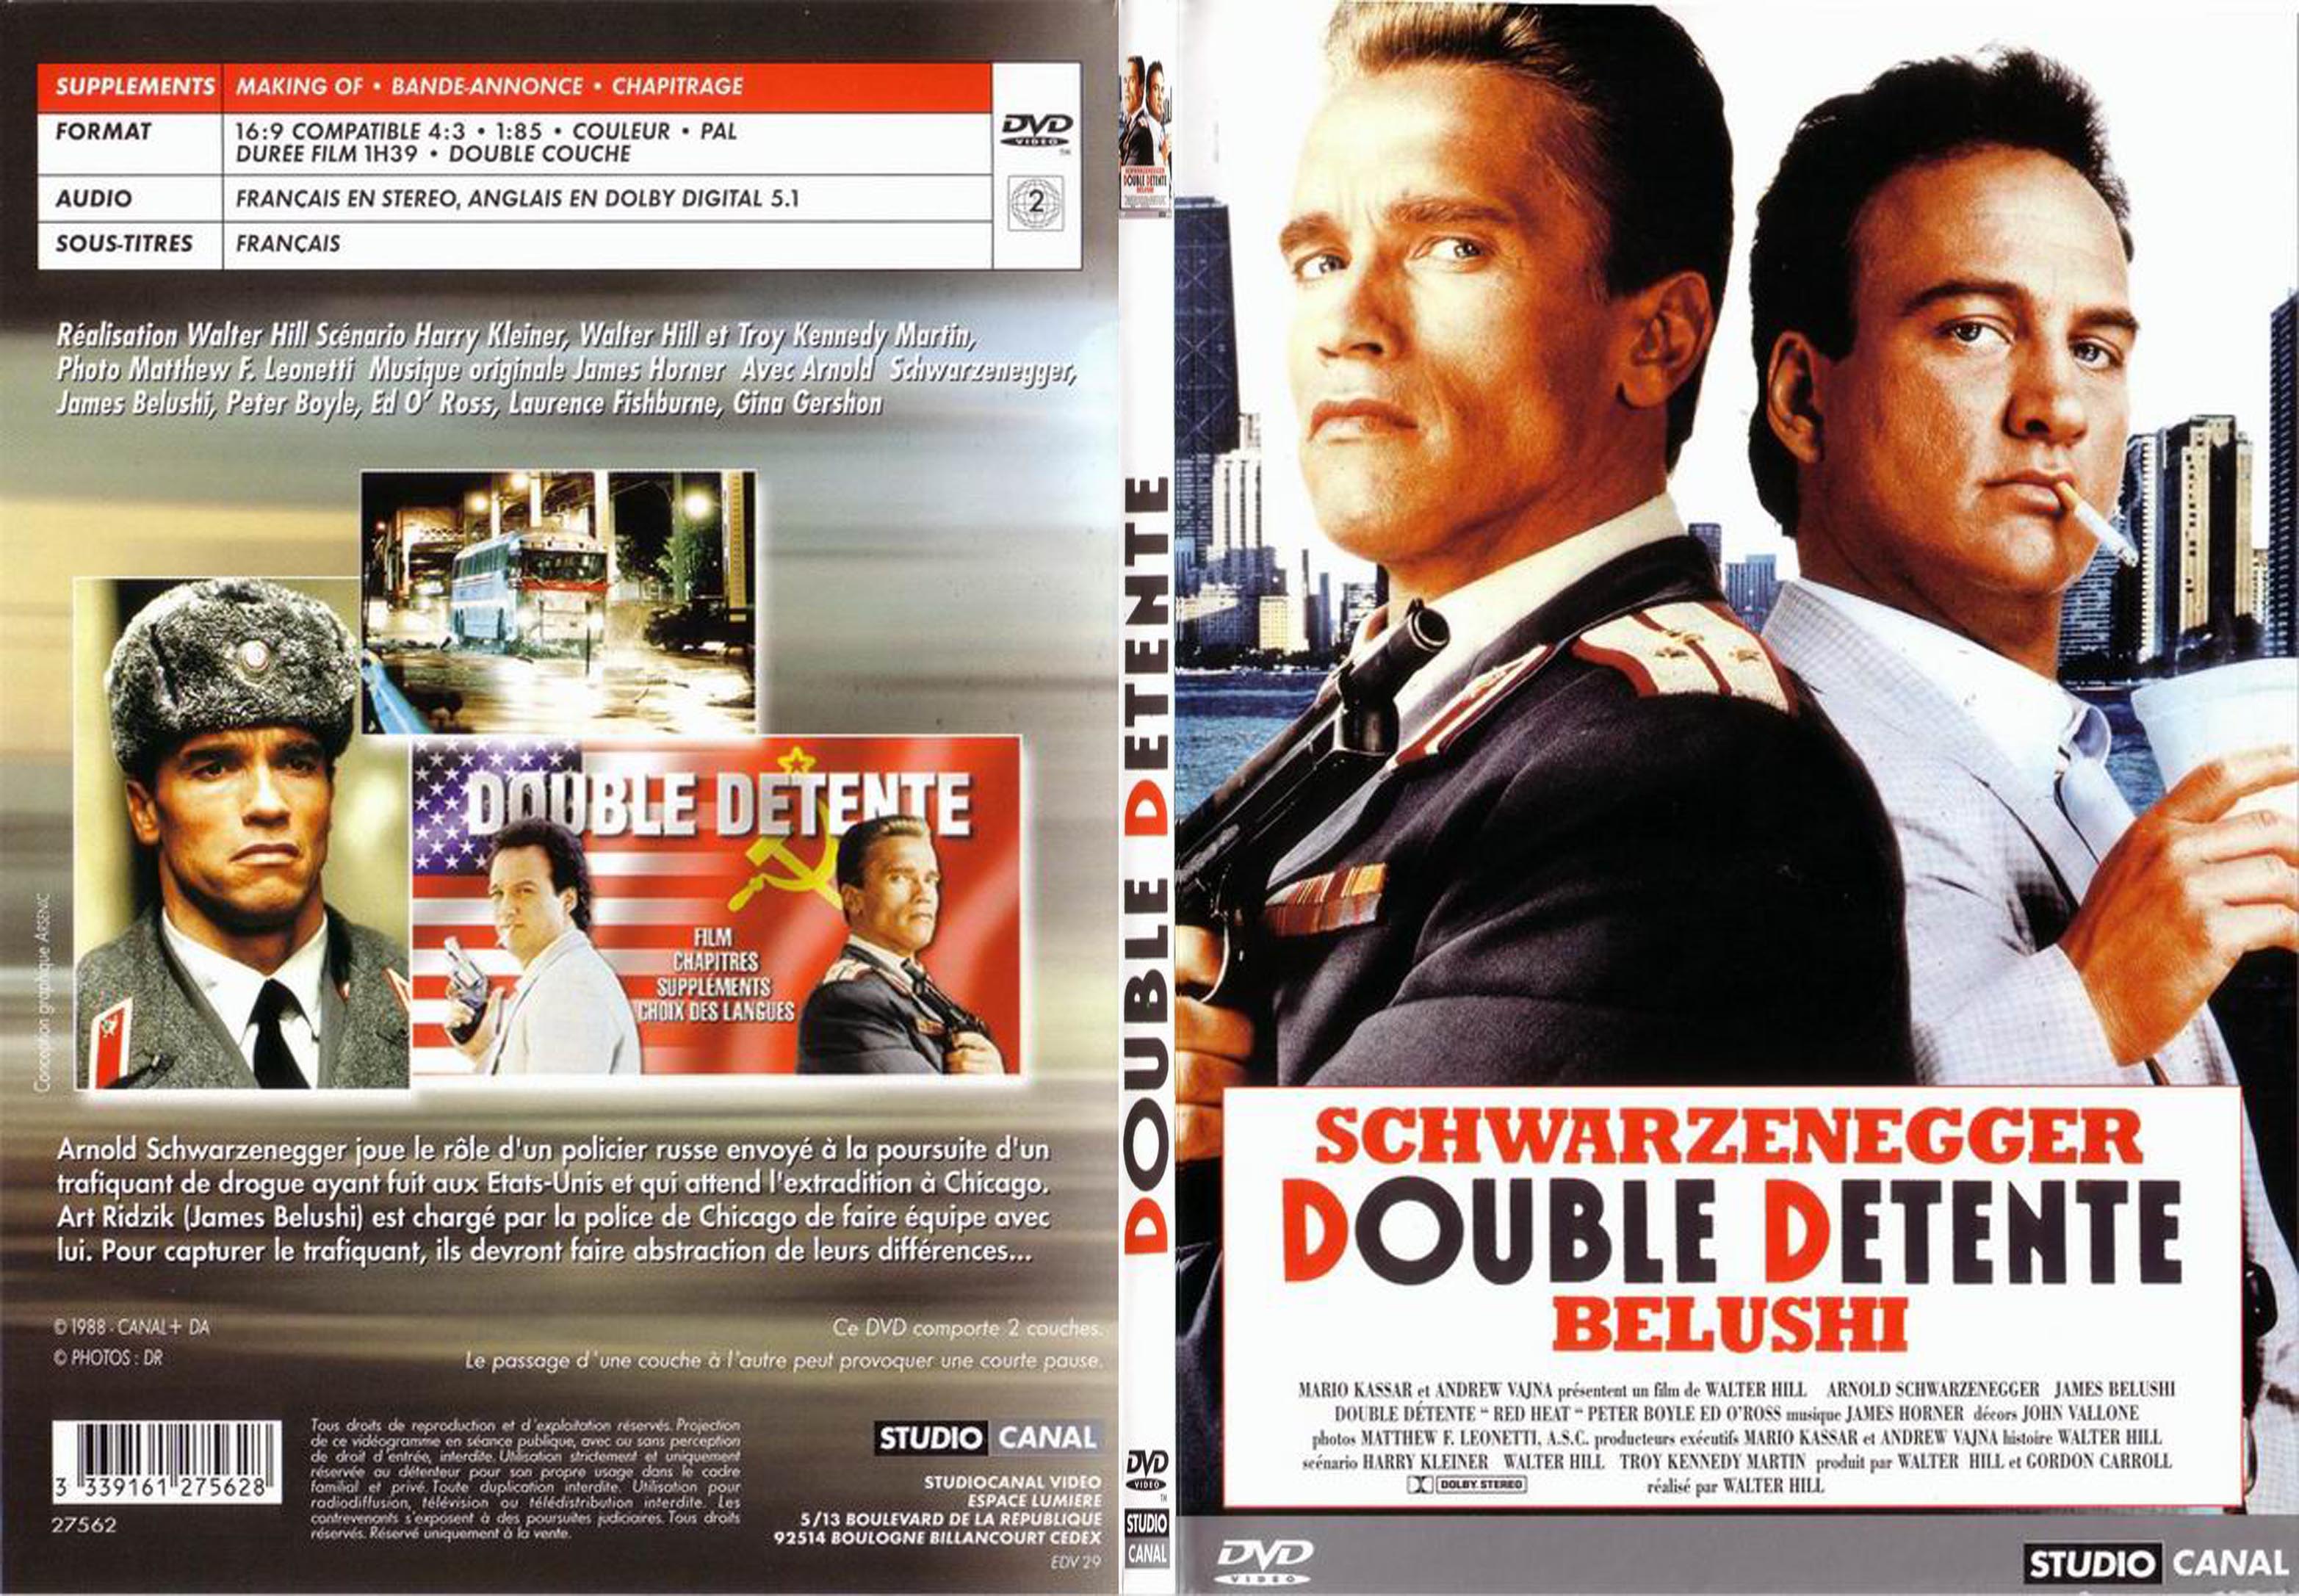 Jaquette DVD double detente - SLIM